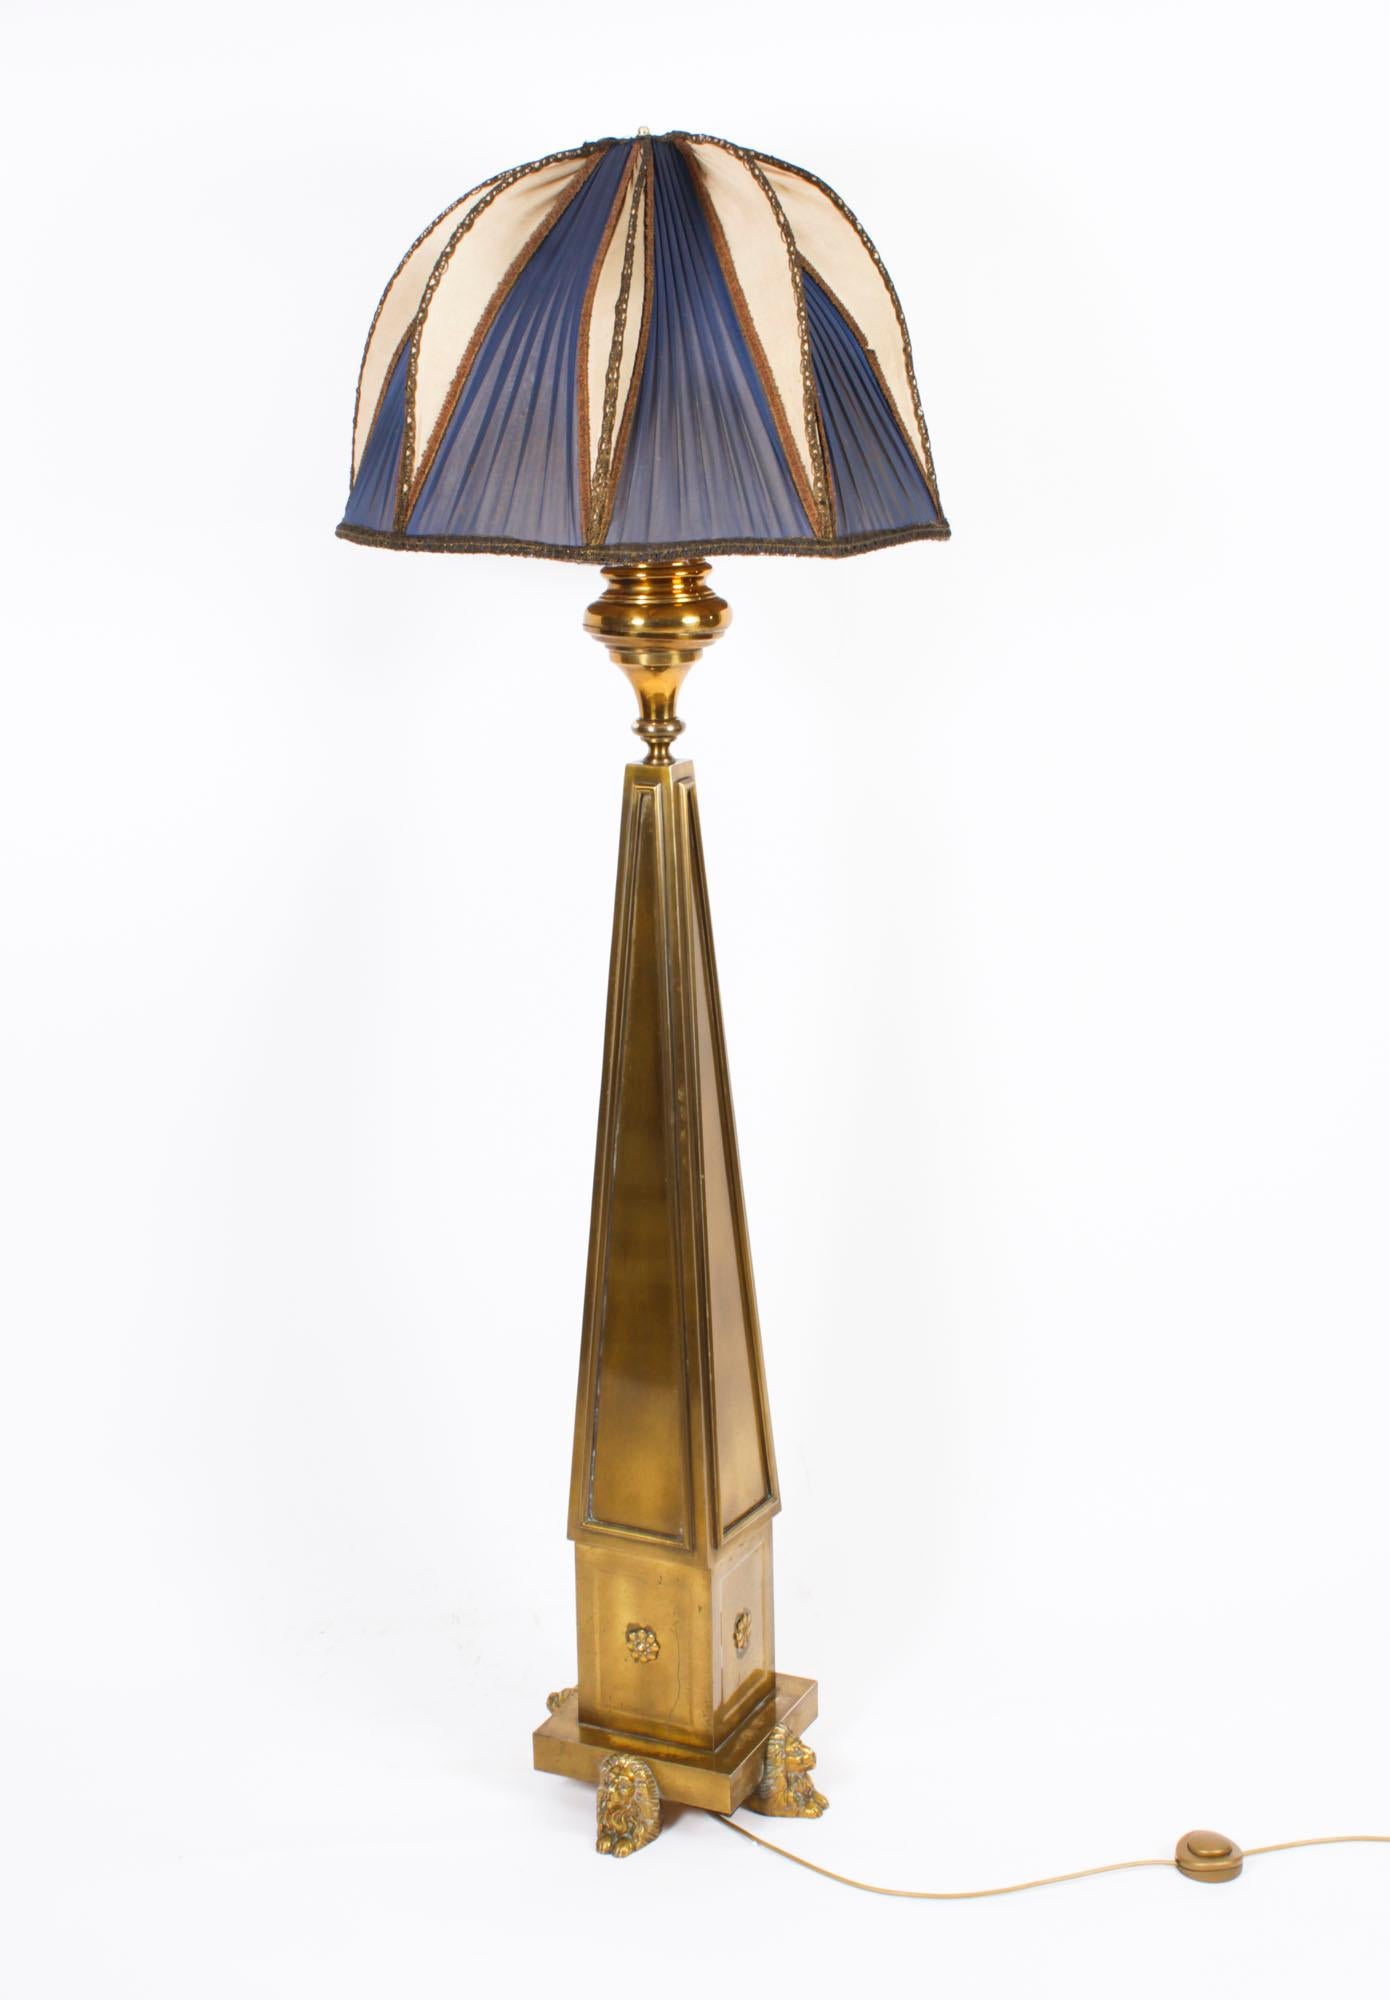 Dies ist eine sehr attraktive und Ausstellungsqualität antiken Französisch Art Deco Messing und Ormolu Stehlampe und Schatten,  Datierung: CIRCA 1920.

Diese prächtige Lampe zeichnet sich durch eine vornehme Säule mit vier dreieckigen, sich